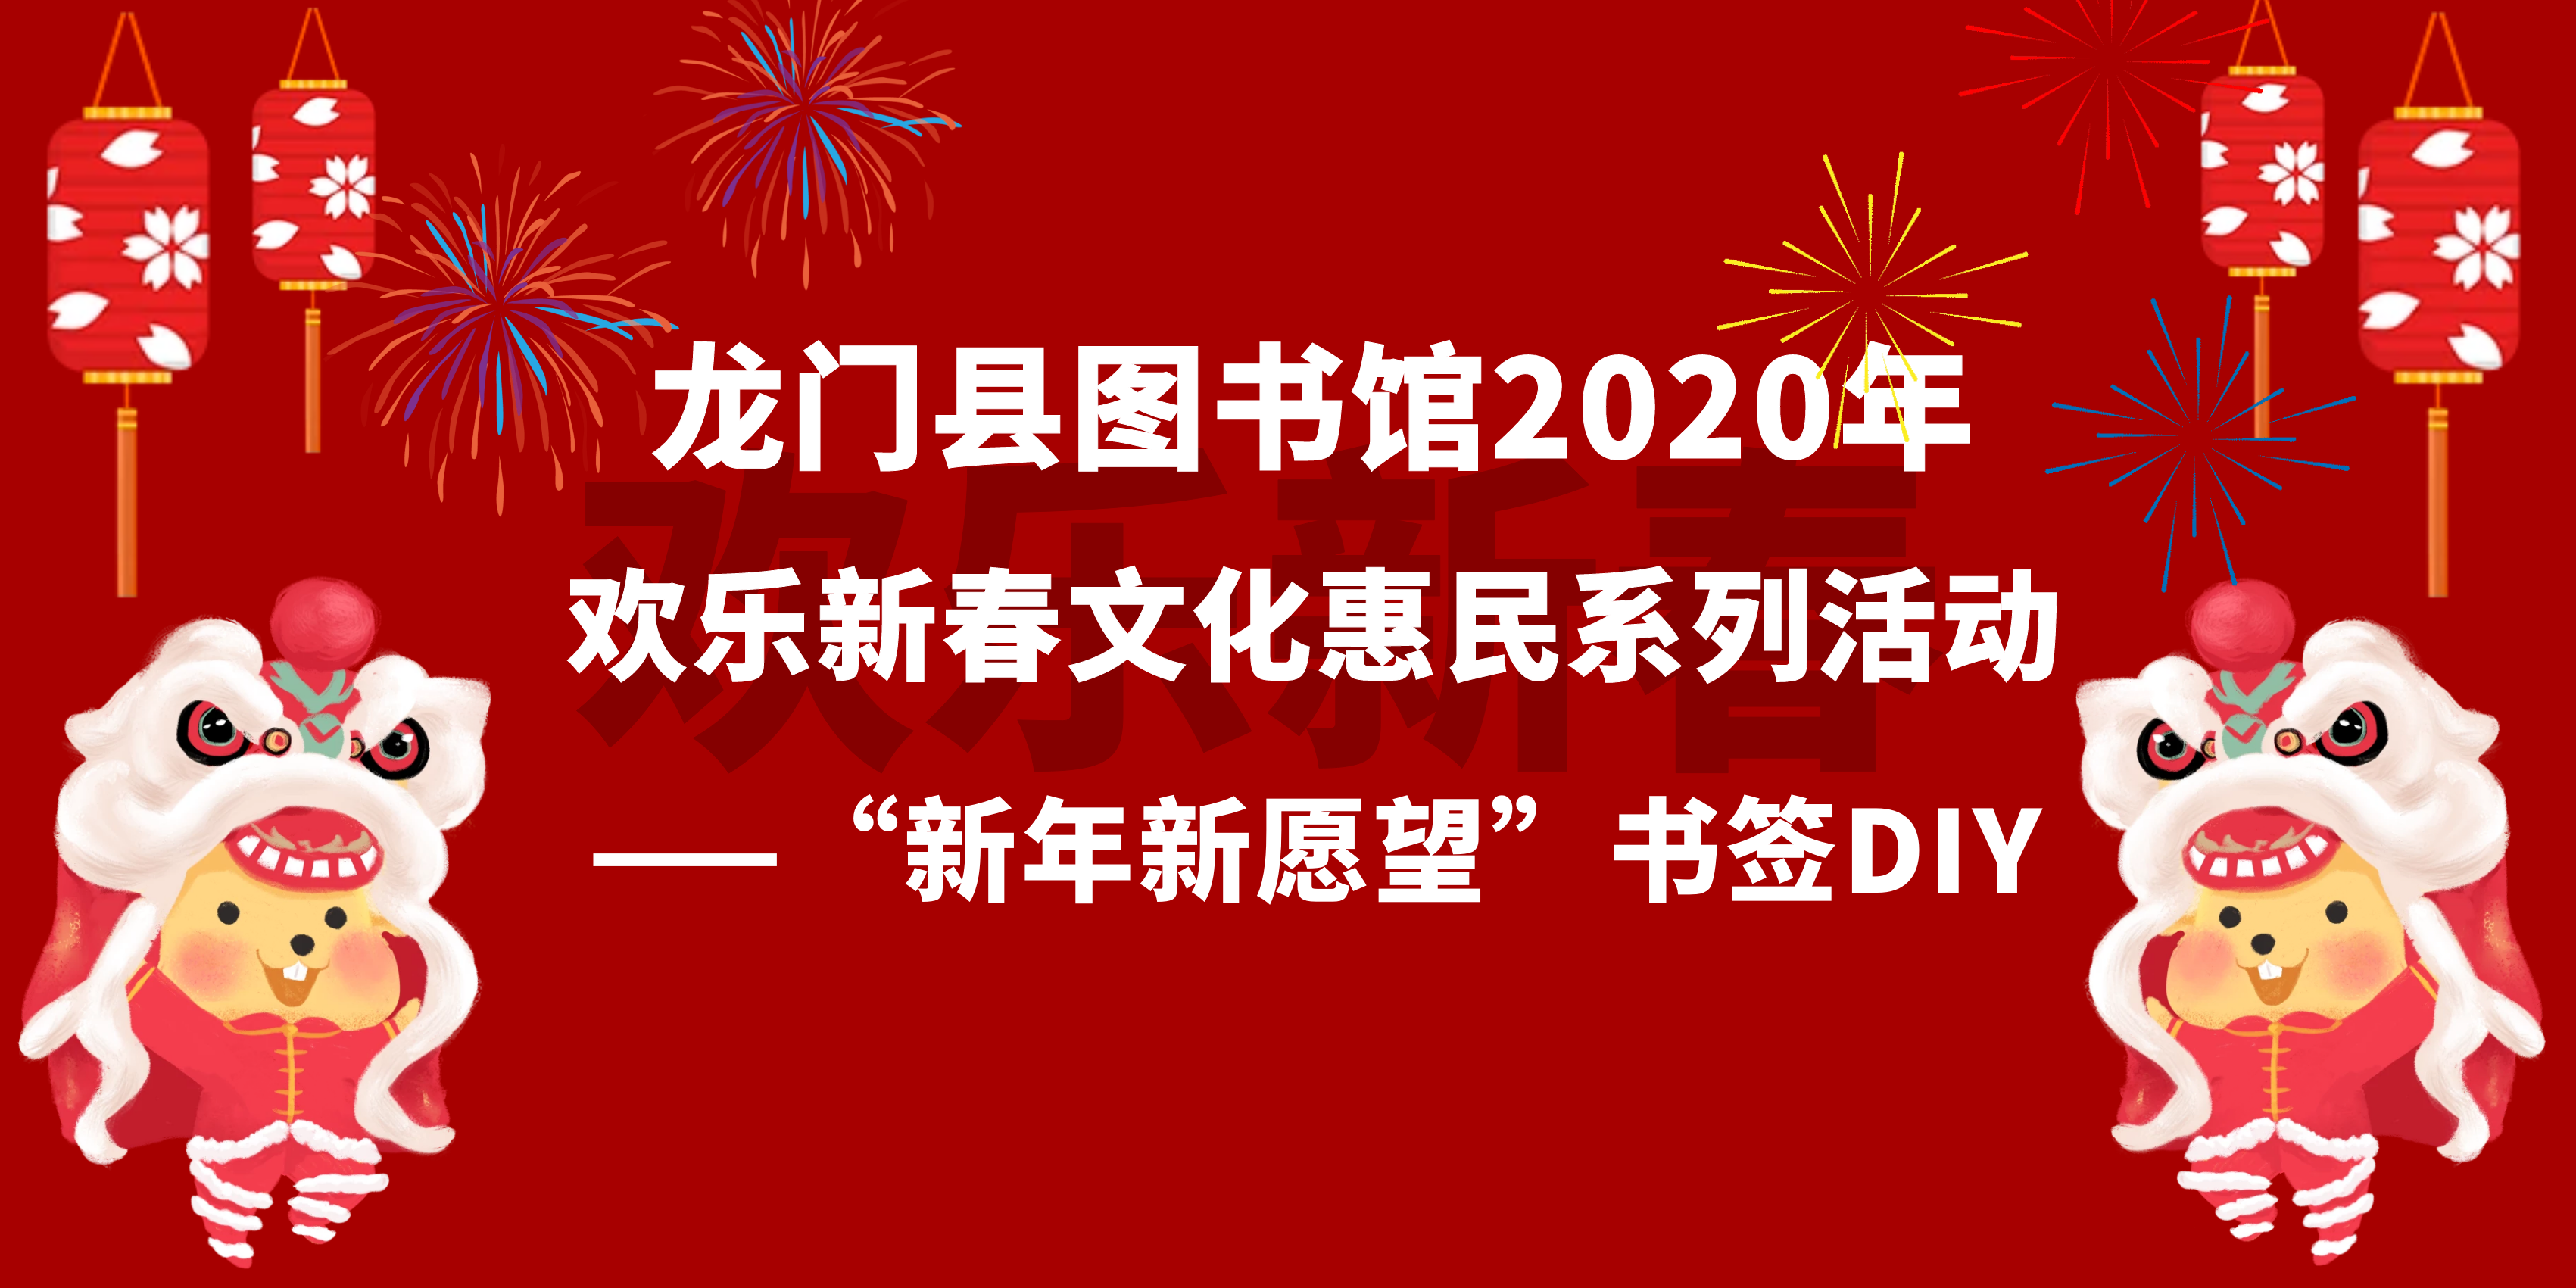 龙门县图书馆2020年欢乐新春文化惠民系列活动之“新年新愿望”书签DIY